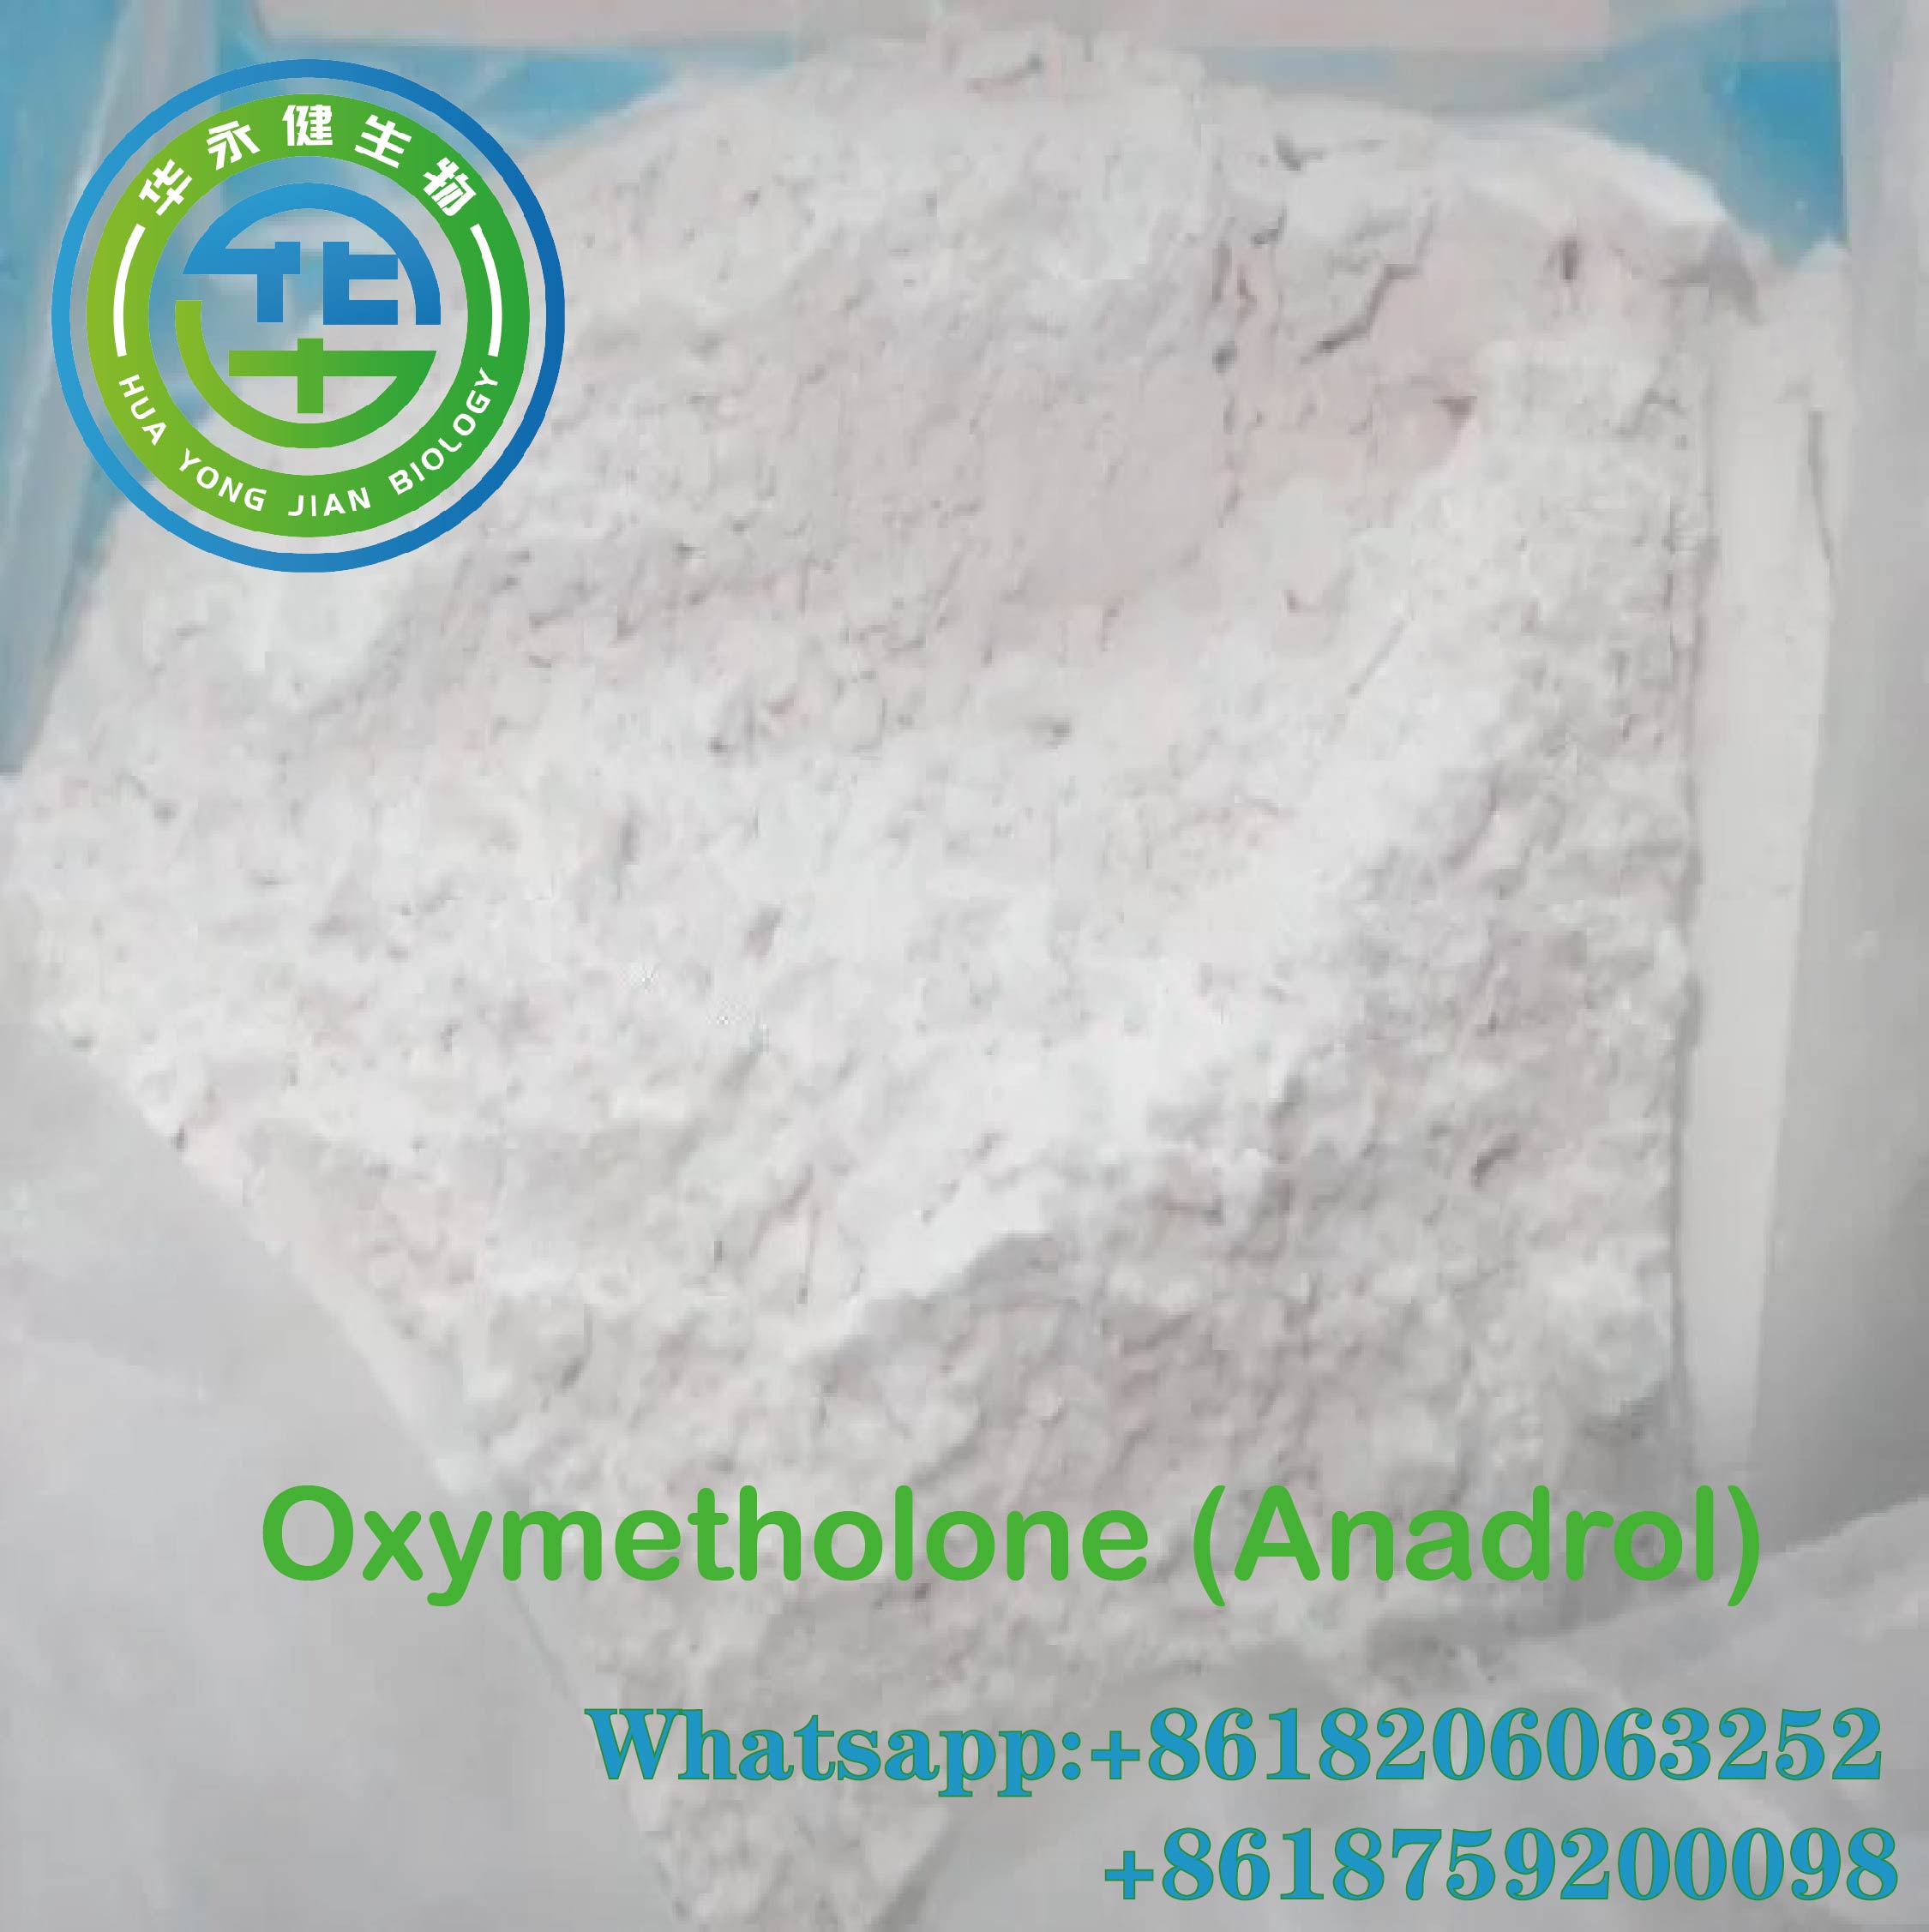 फार्मास्युटिकल ग्रेड पेन रिलीफ पावडर Oxymetholone (Anadrol) CAS 434-07-1 वैशिष्ट्यीकृत प्रतिमा